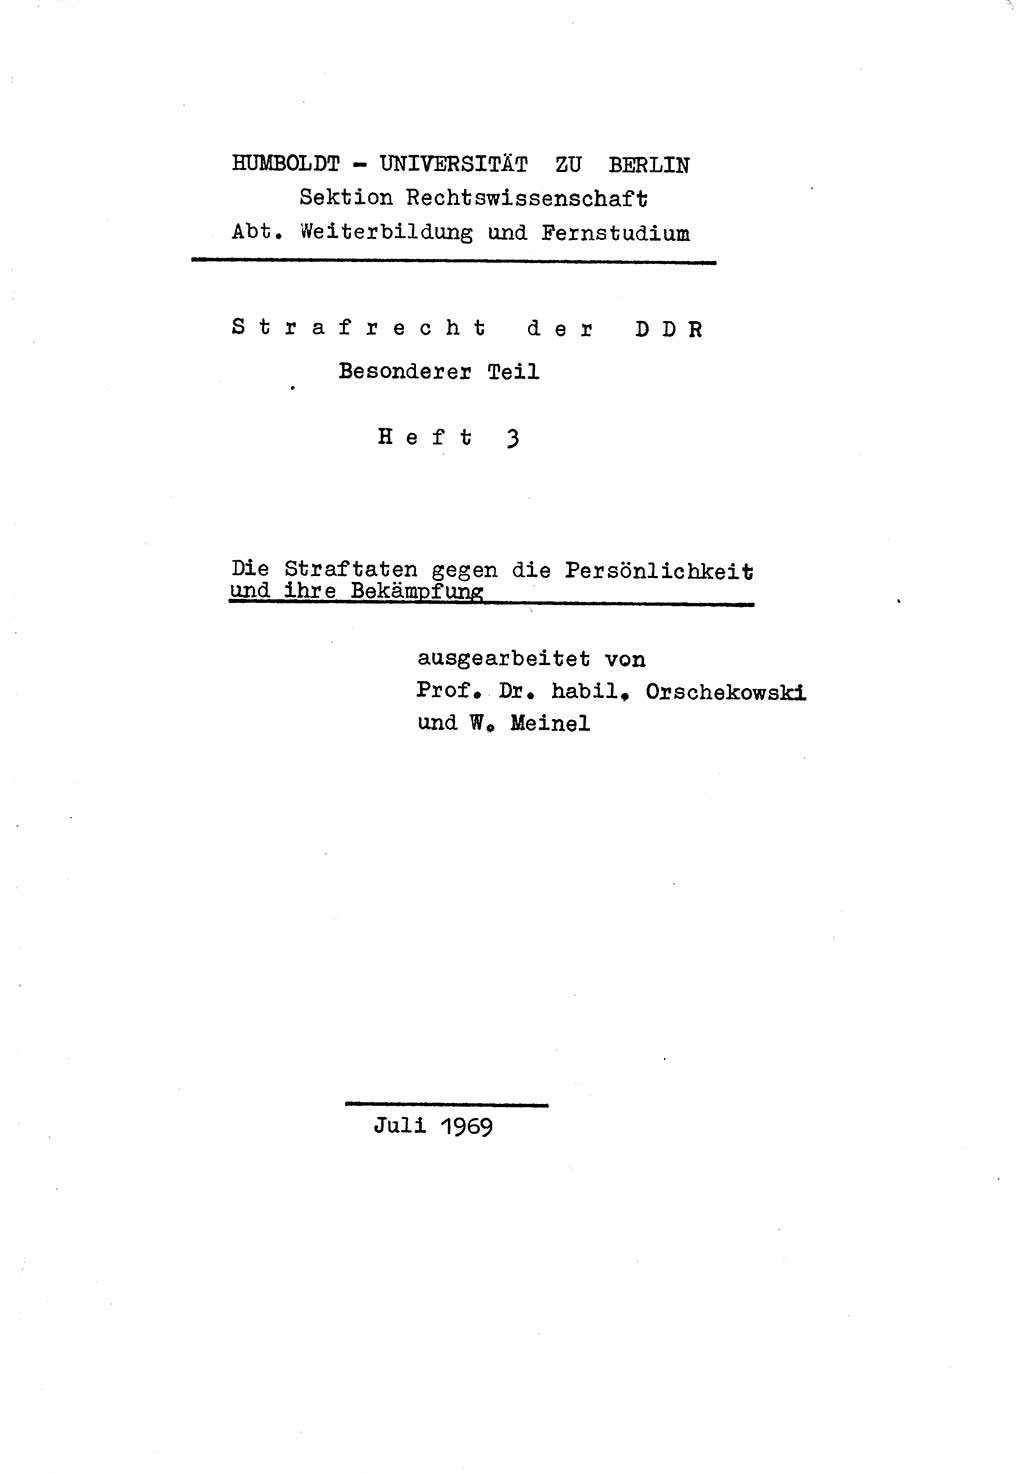 Strafrecht der DDR (Deutsche Demokratische Republik), Besonderer Teil, Lehrmaterial, Heft 3 1969, Seite 1 (Strafr. DDR BT Lehrmat. H. 3 1969, S. 1)